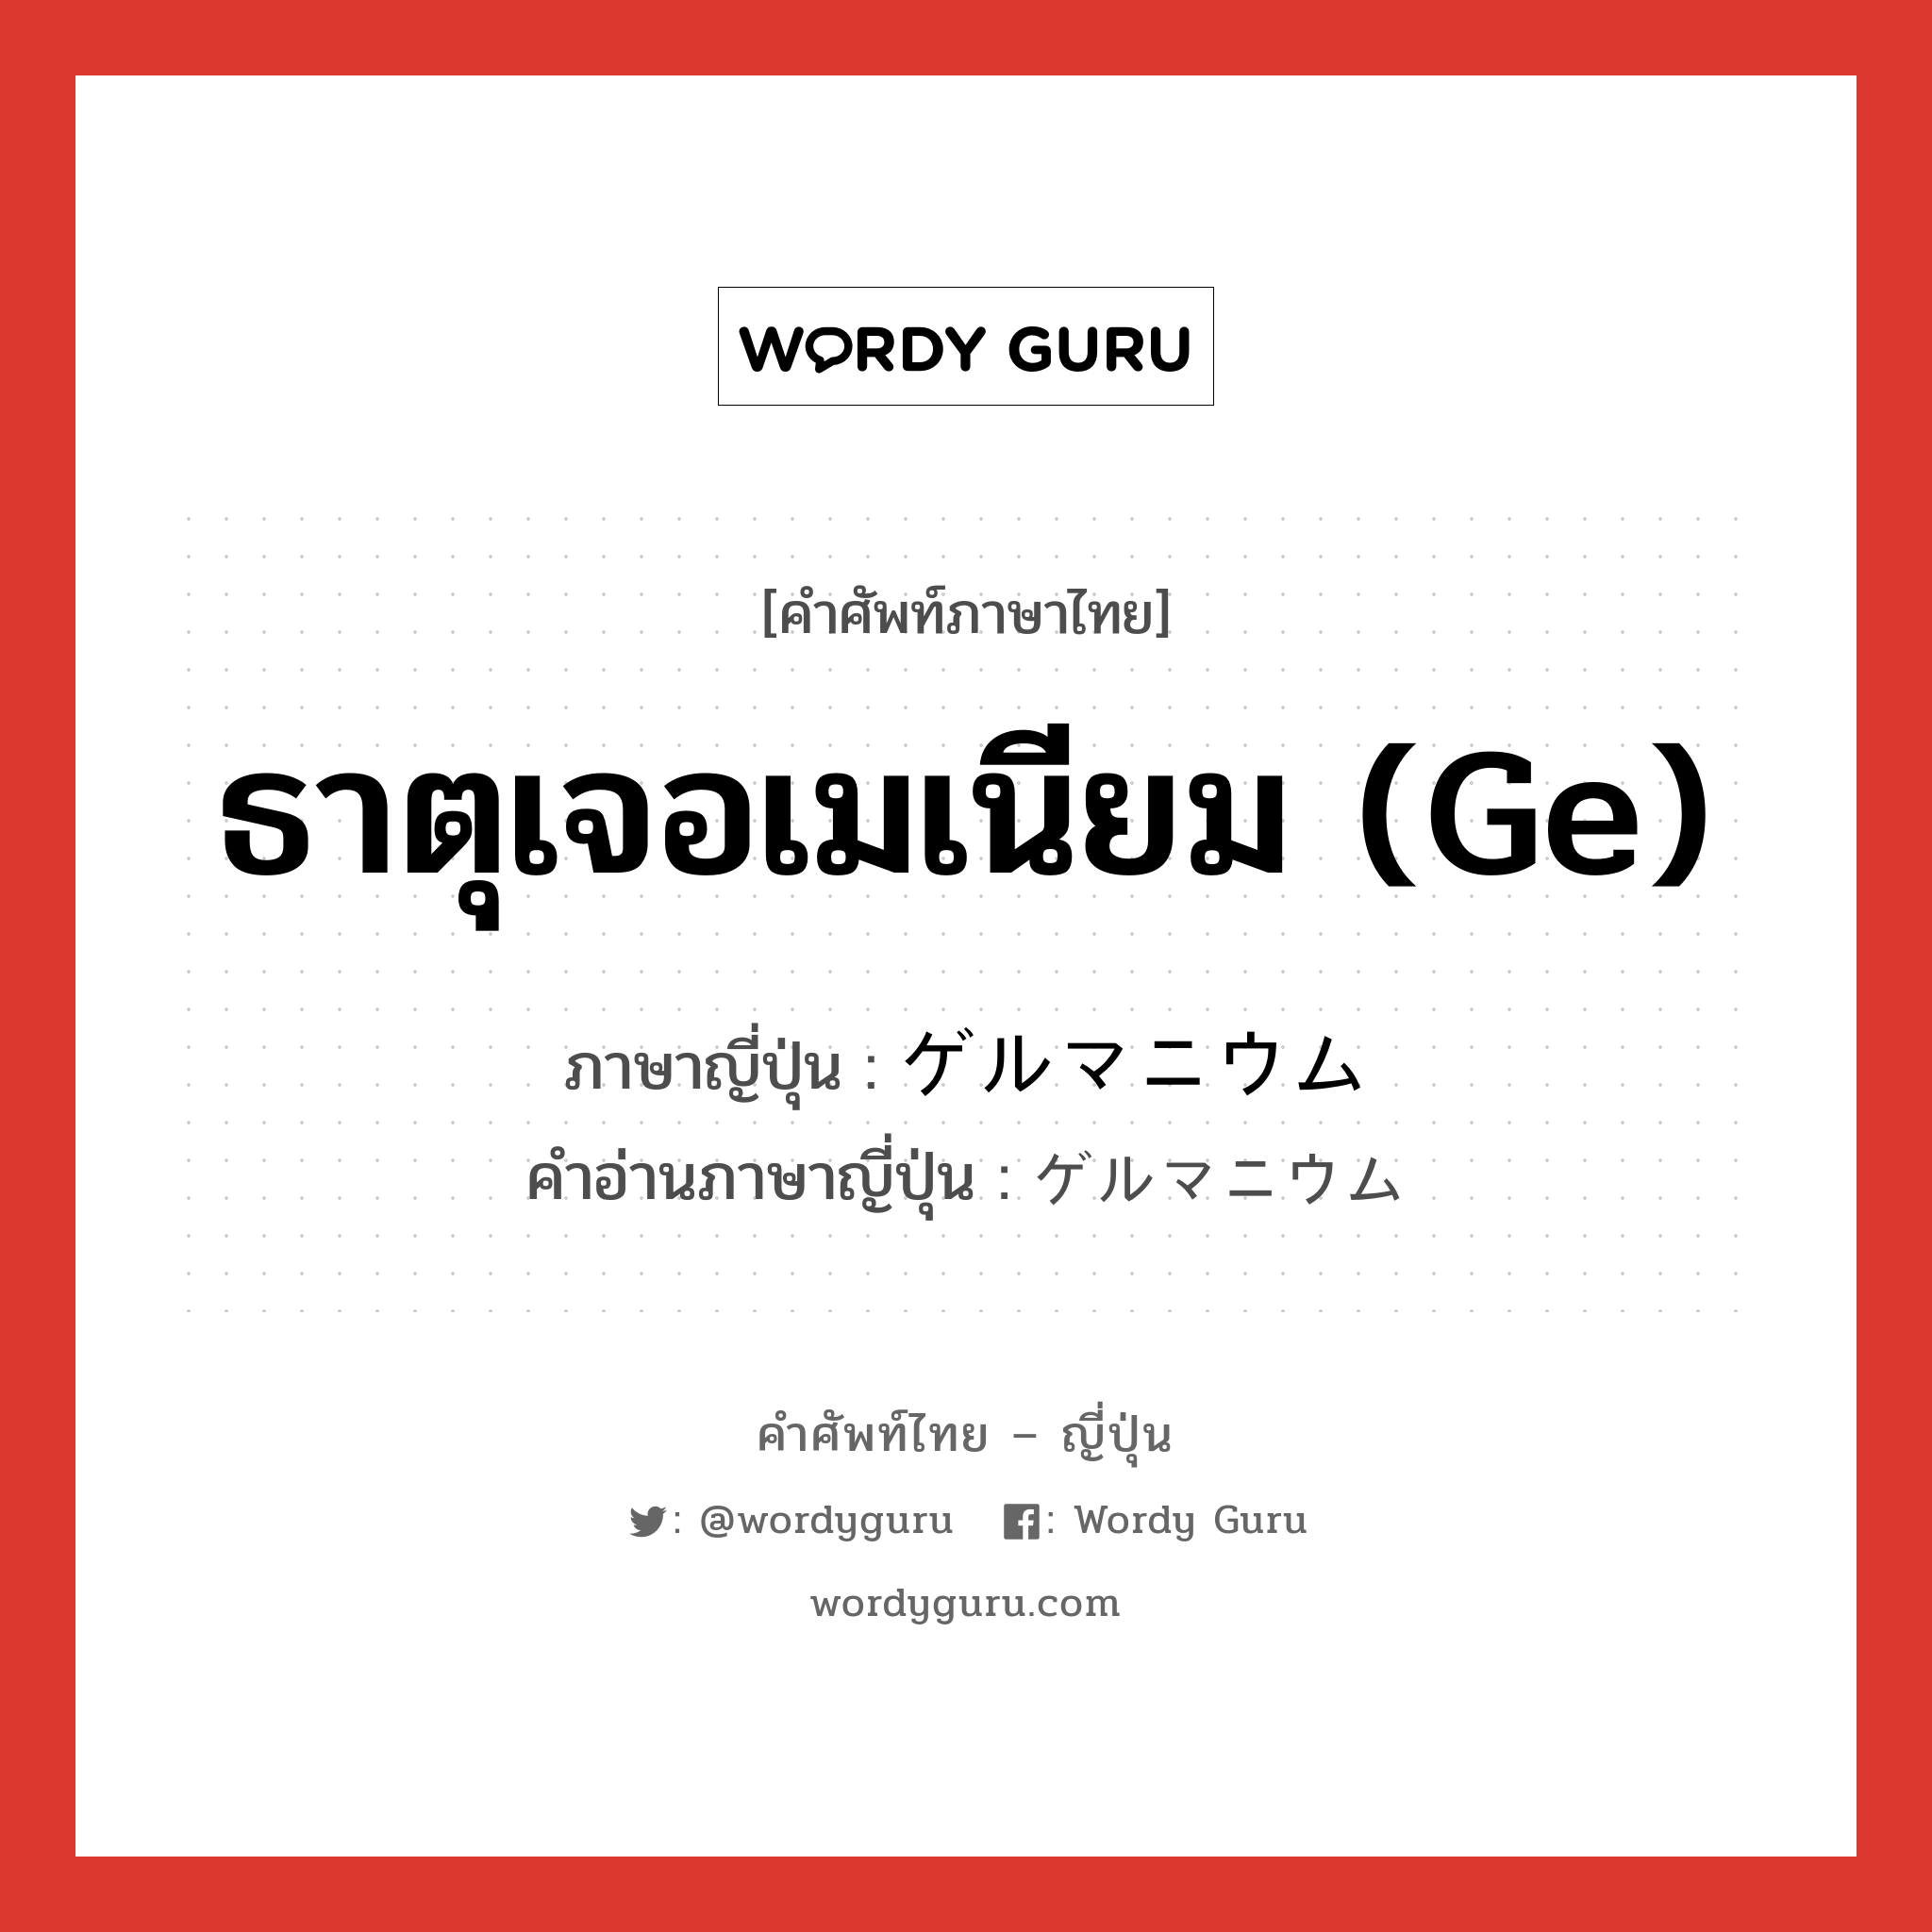 ธาตุเจอเมเนียม (Ge) ภาษาญี่ปุ่นคืออะไร, คำศัพท์ภาษาไทย - ญี่ปุ่น ธาตุเจอเมเนียม (Ge) ภาษาญี่ปุ่น ゲルマニウム คำอ่านภาษาญี่ปุ่น ゲルマニウム หมวด n หมวด n